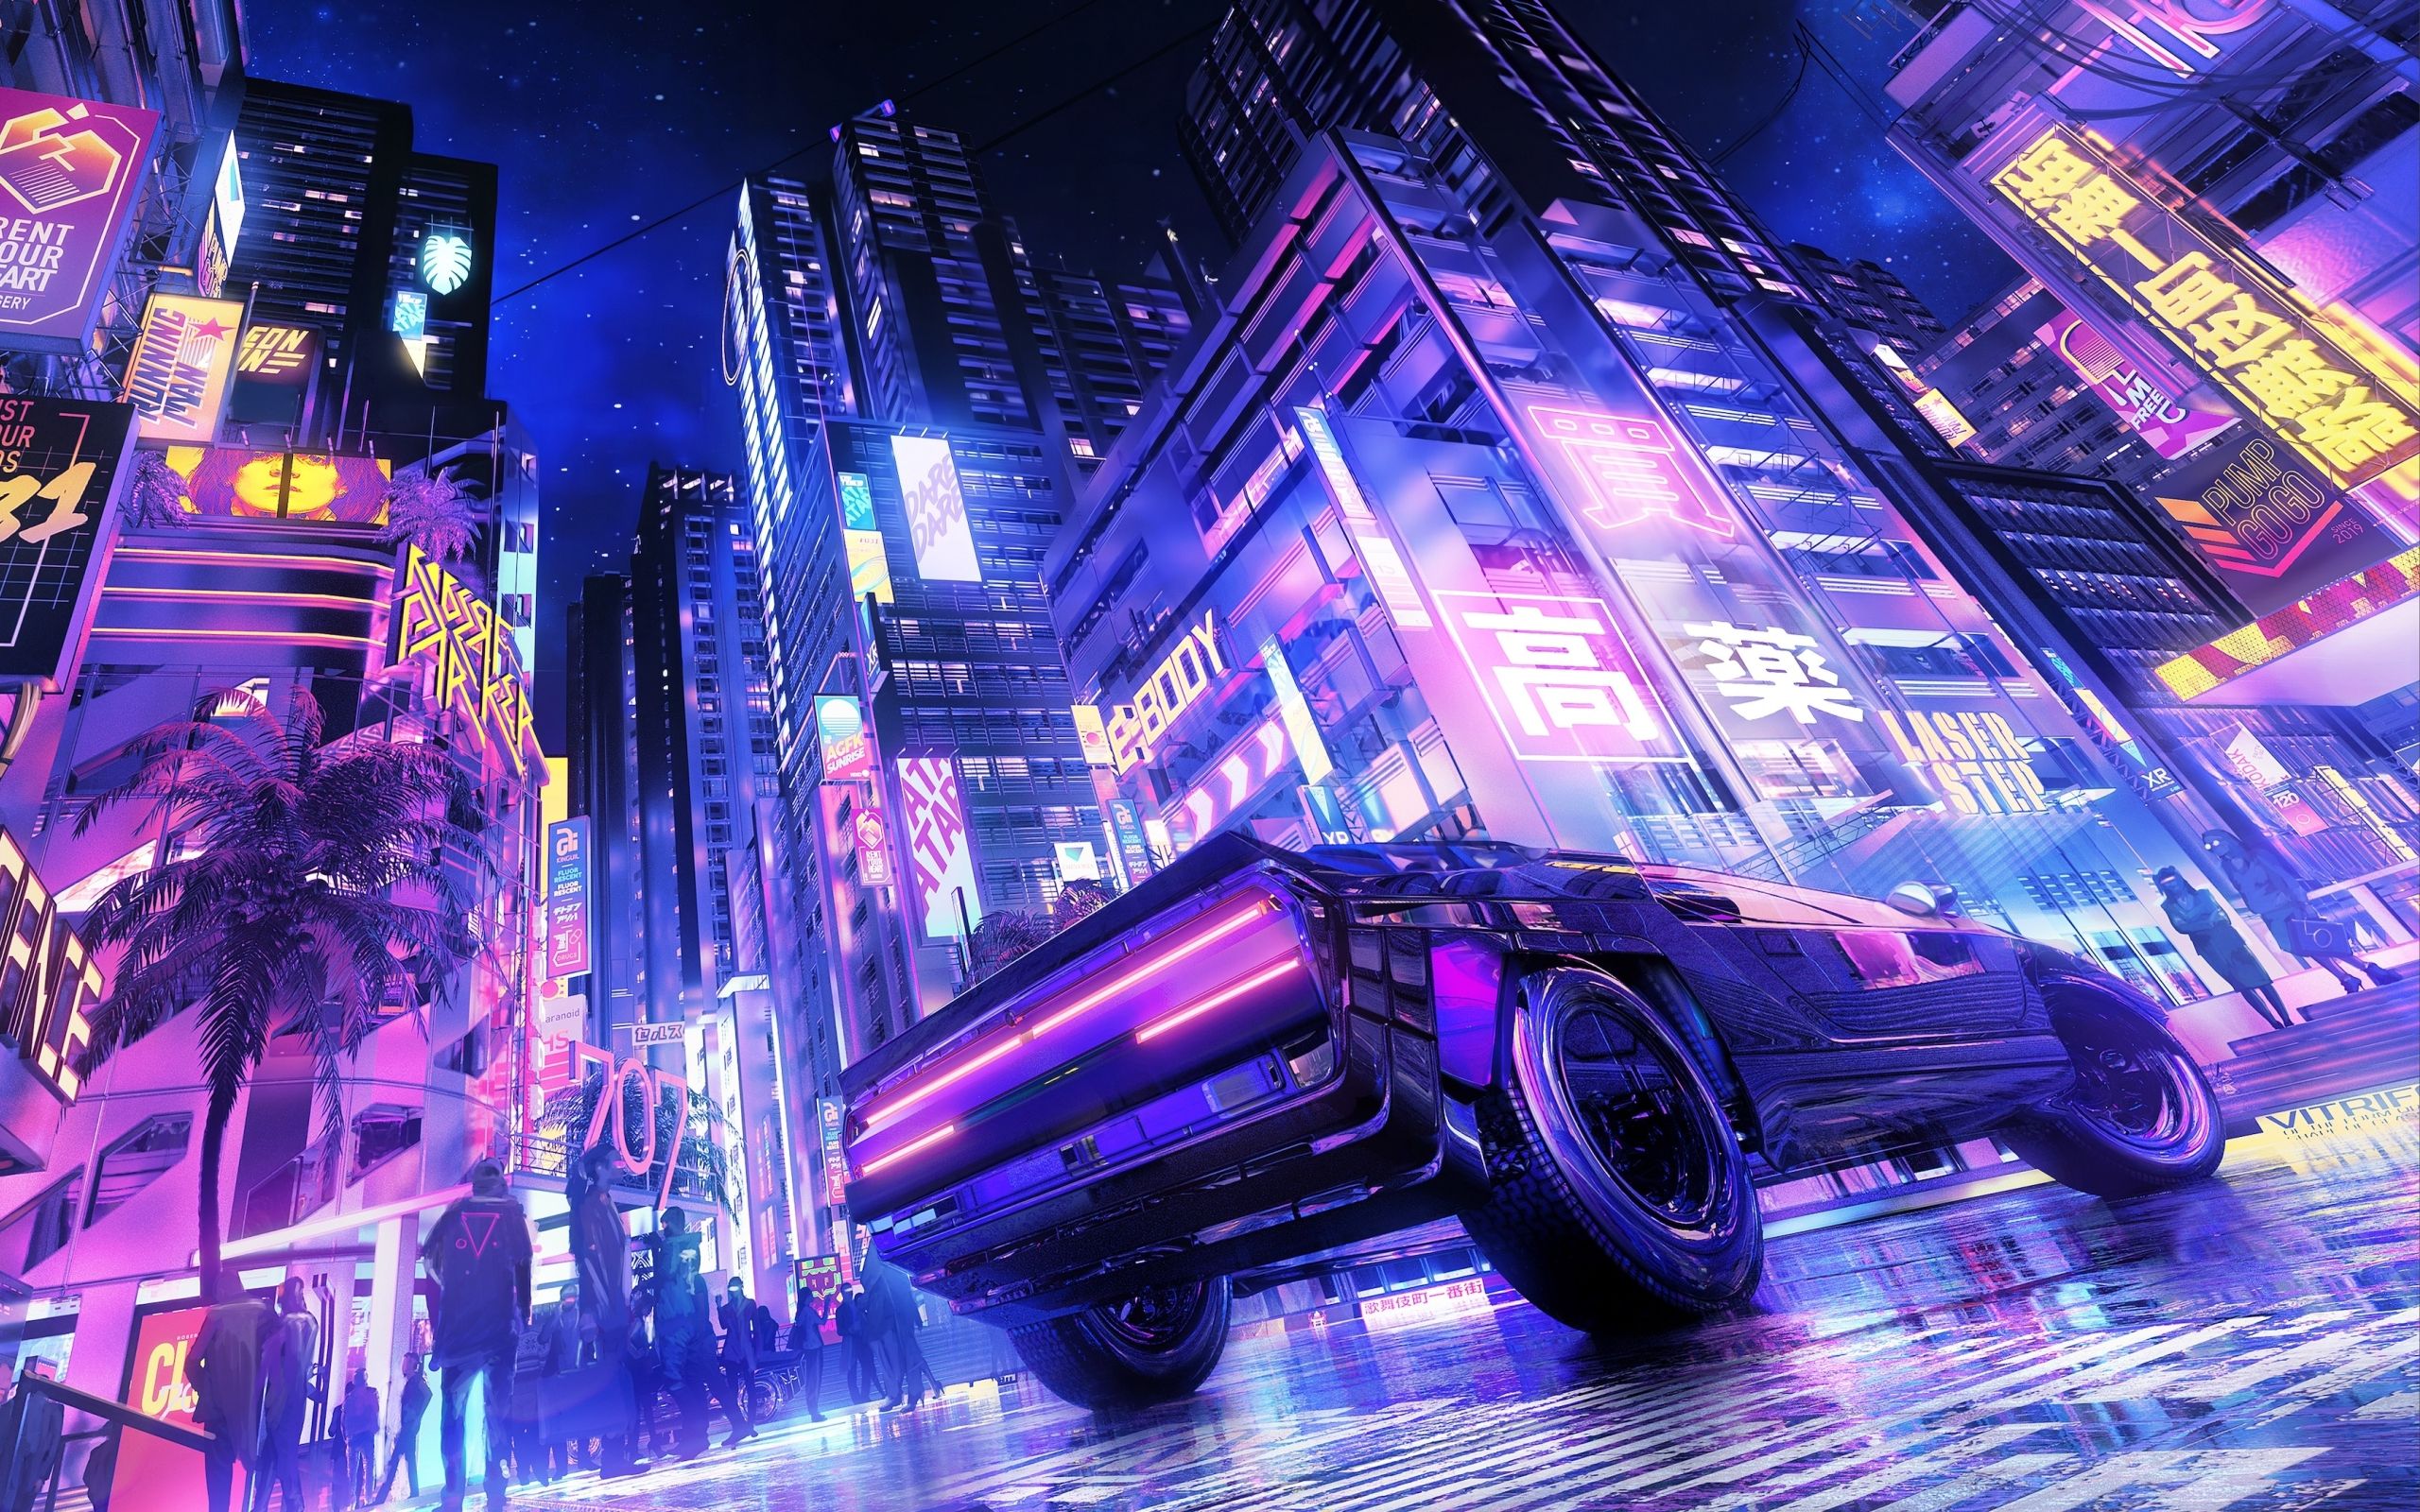 Futuristic Neon City HD Car Rider 2560x1600 Resolution Wallpaper, HD Artist 4K Wallpaper, Image, Photo and Background Den. Cyberpunk city, Cyberpunk art, City wallpaper